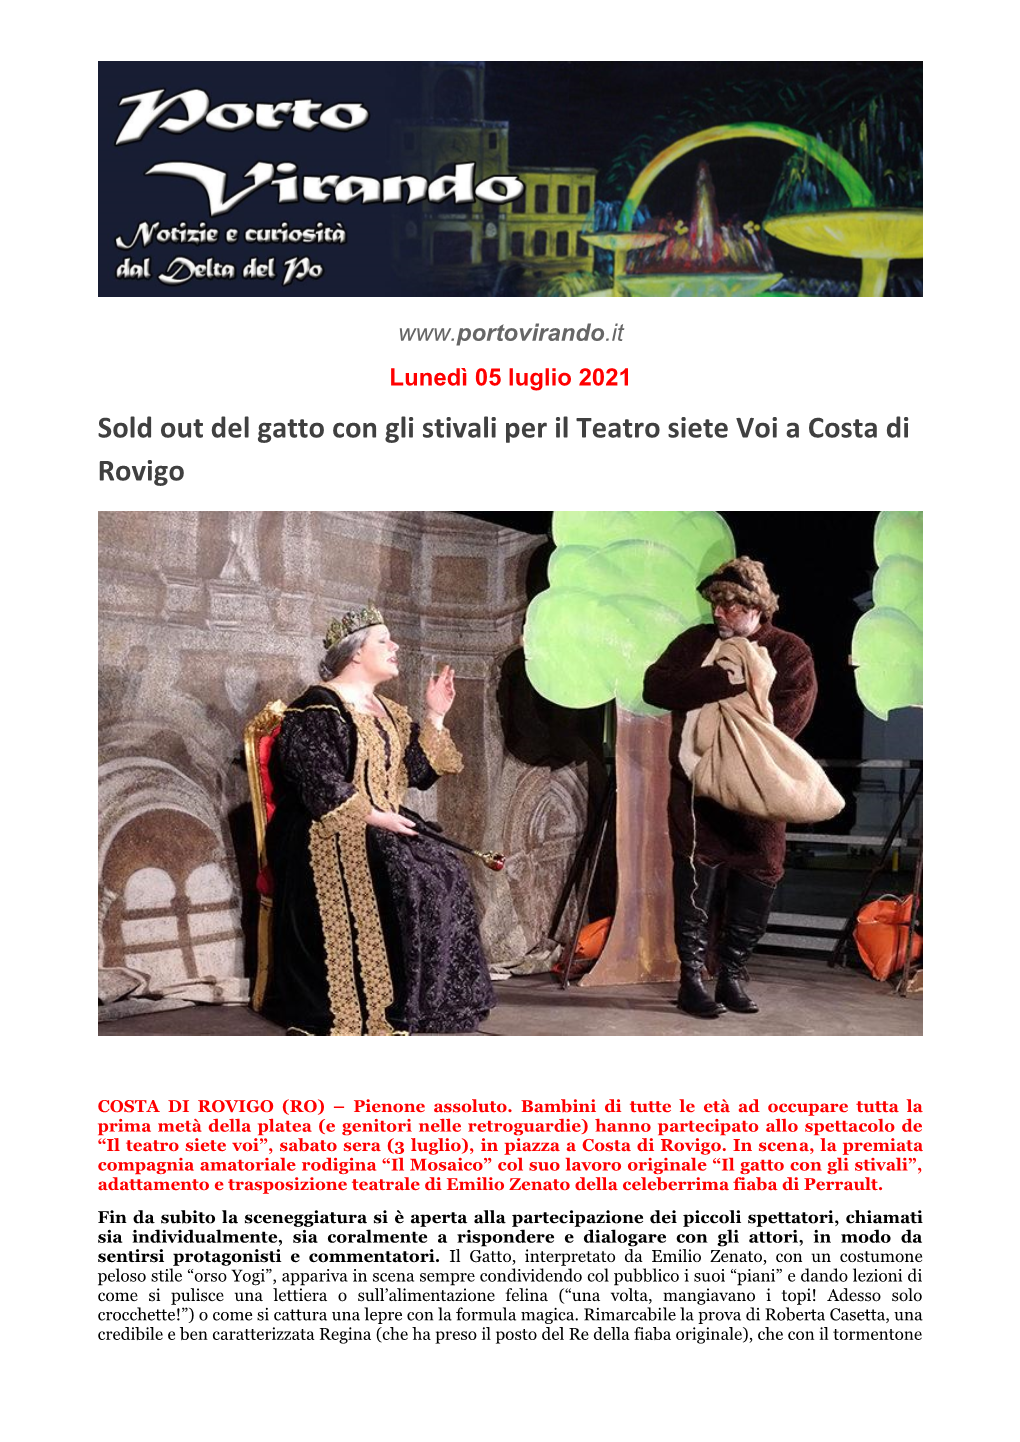 Sold out Del Gatto Con Gli Stivali Per Il Teatro Siete Voi a Costa Di Rovigo